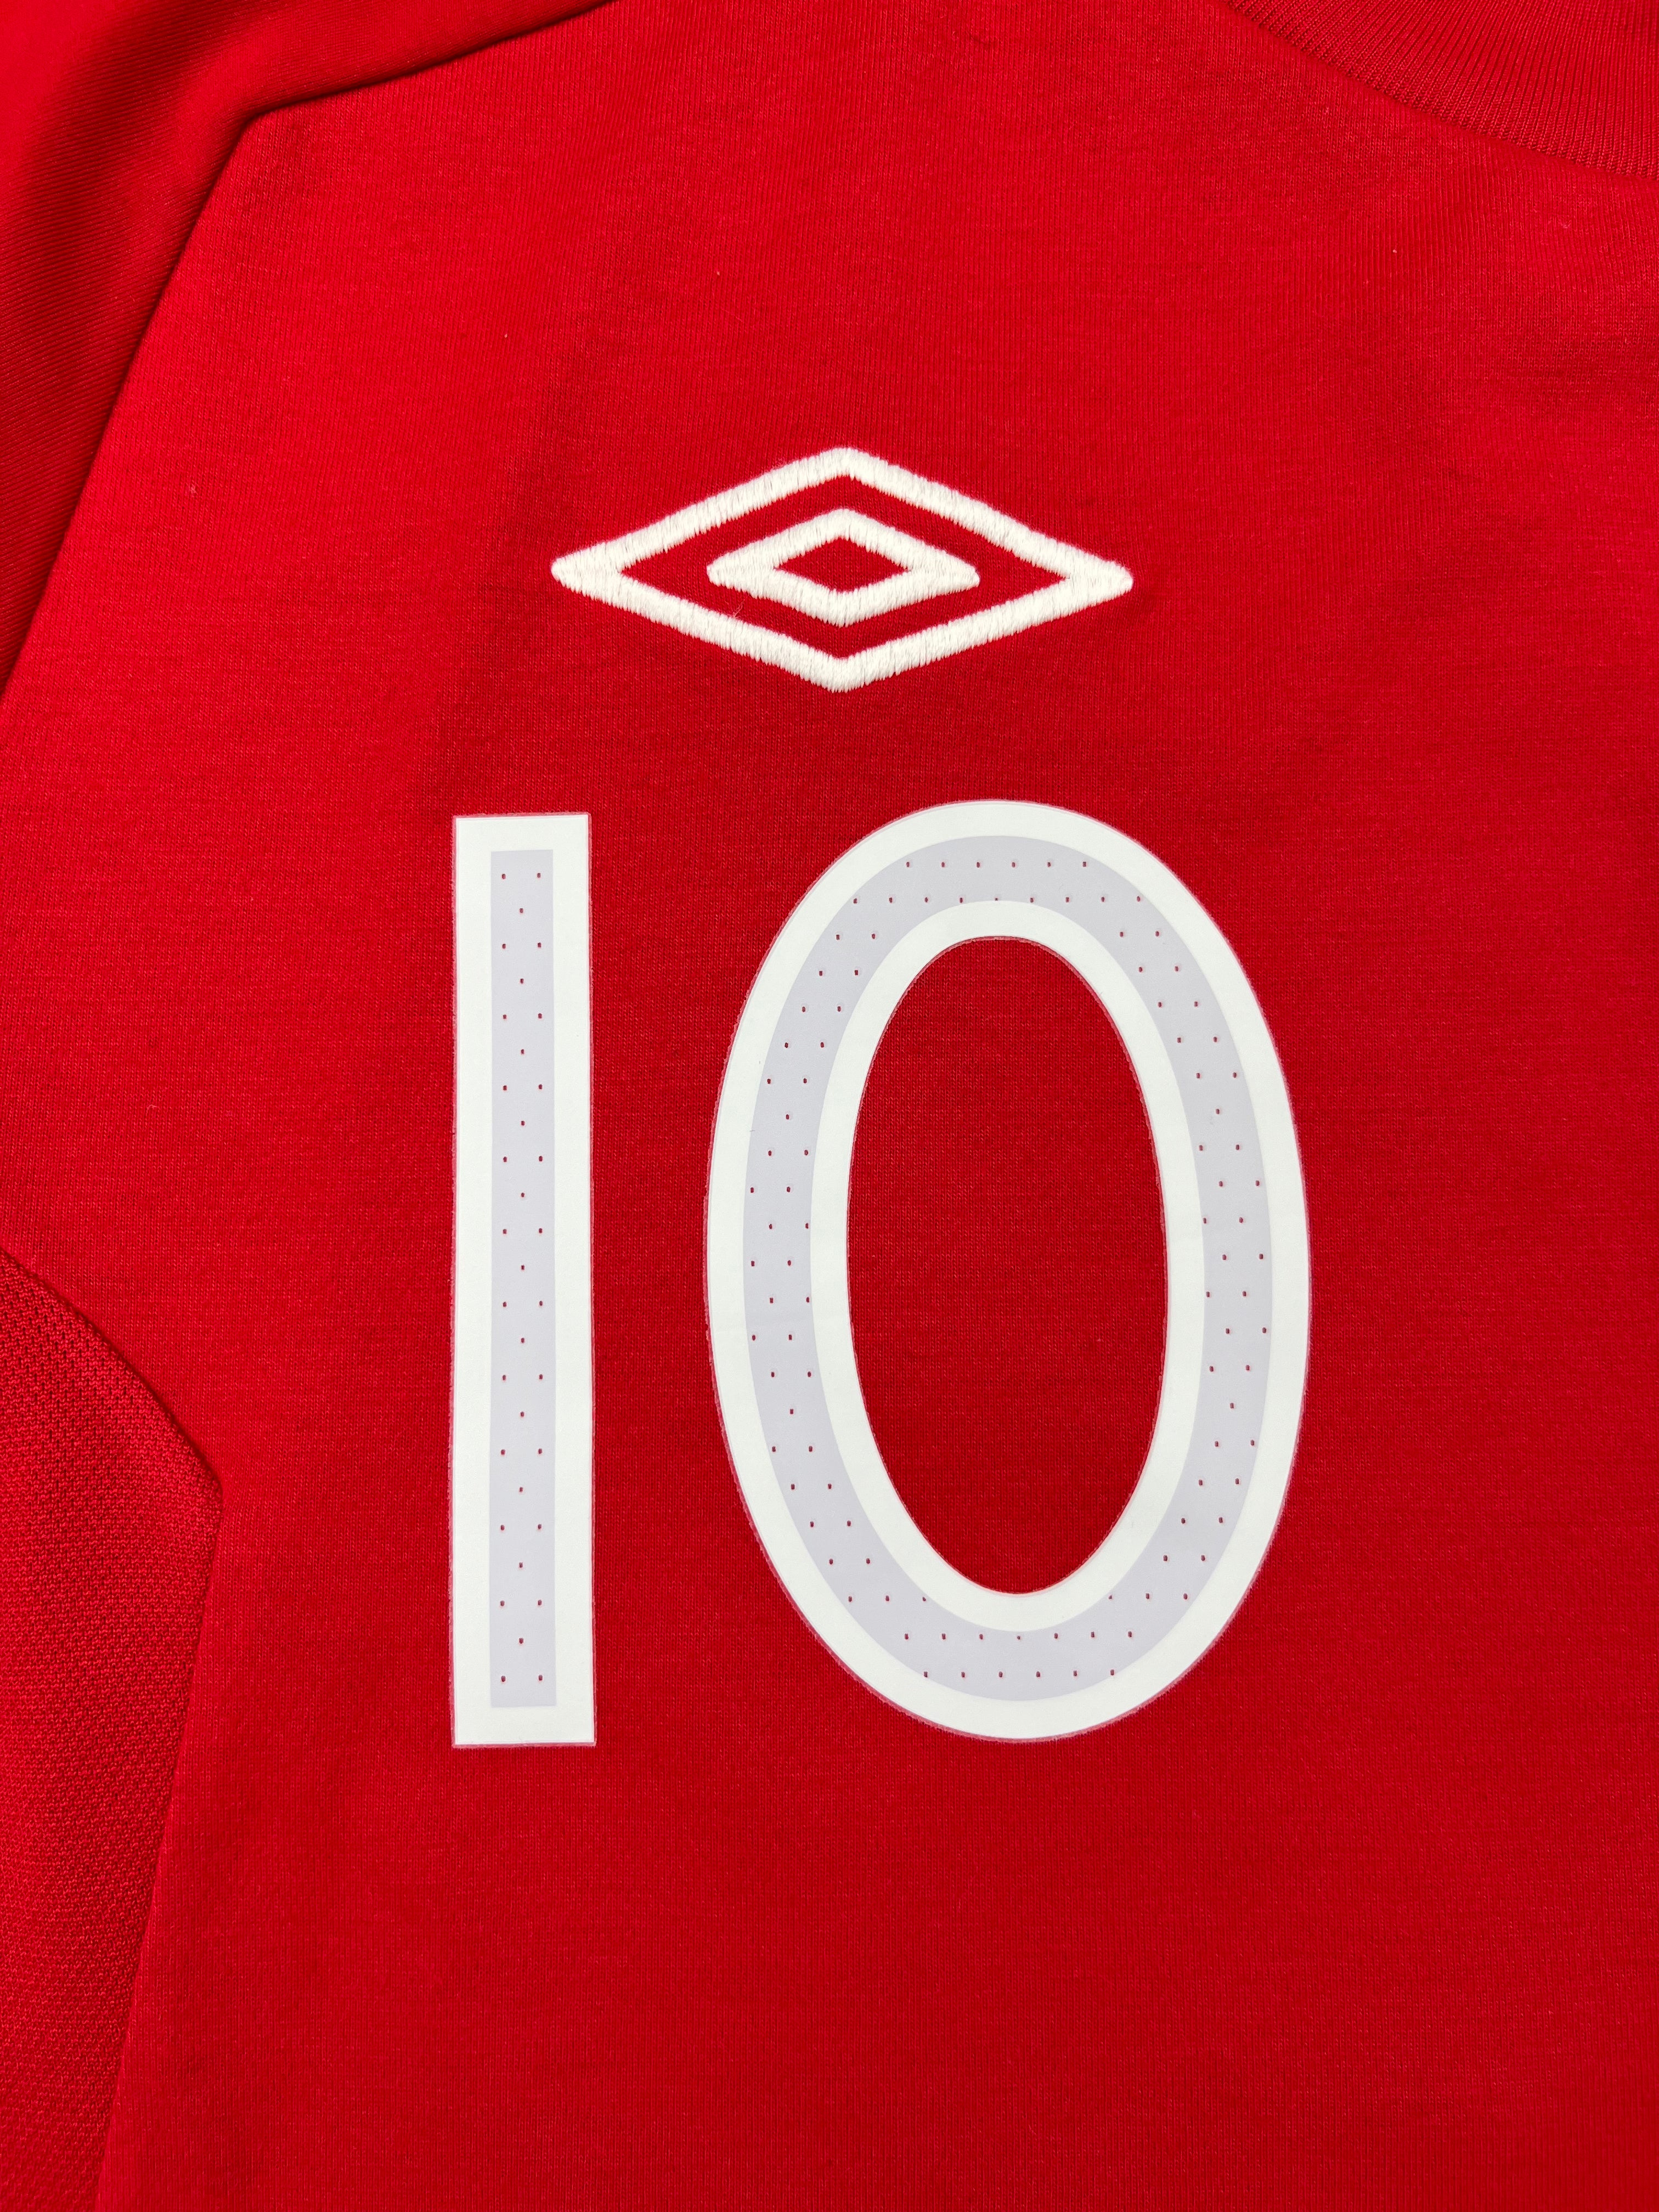 2010/11 England Away Shirt Rooney #10 (L) 9/10